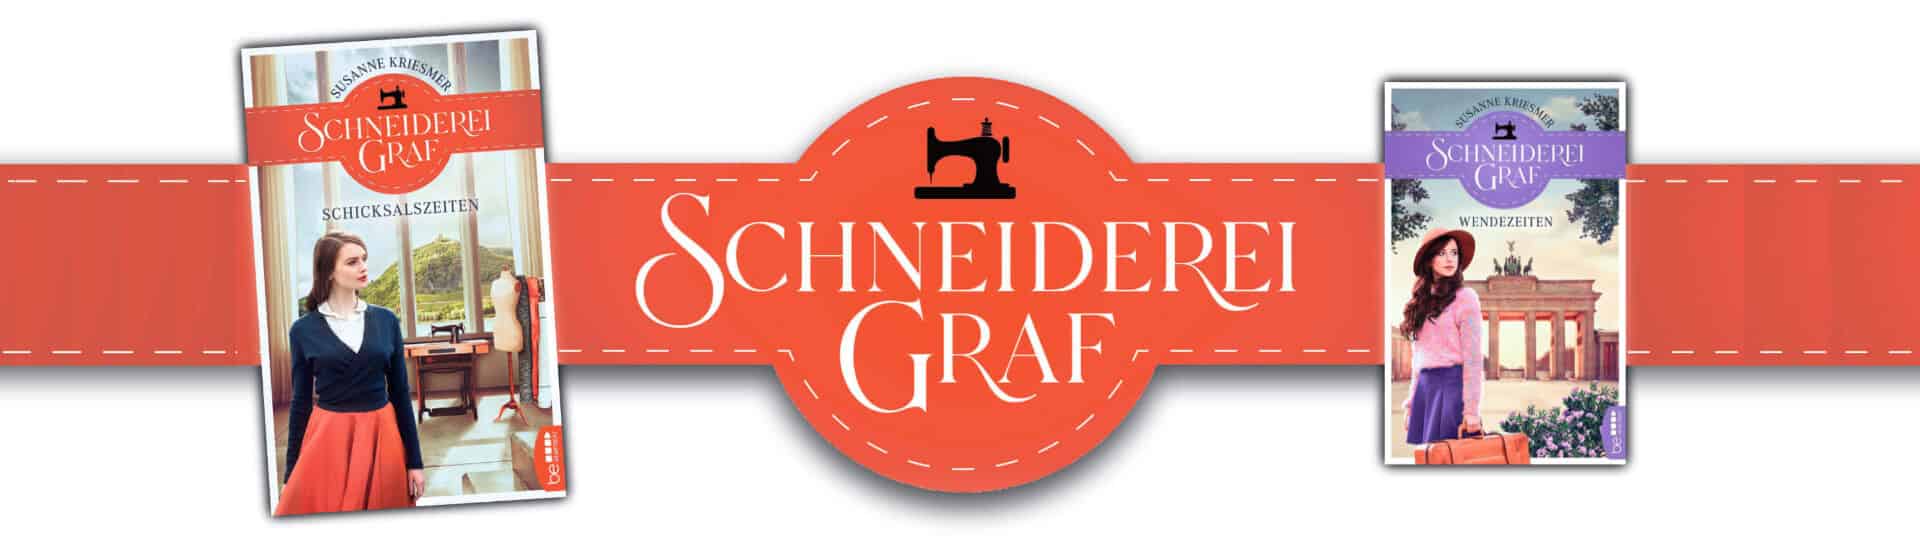 Schneiderei Graf - die Godesberger Familiensaga